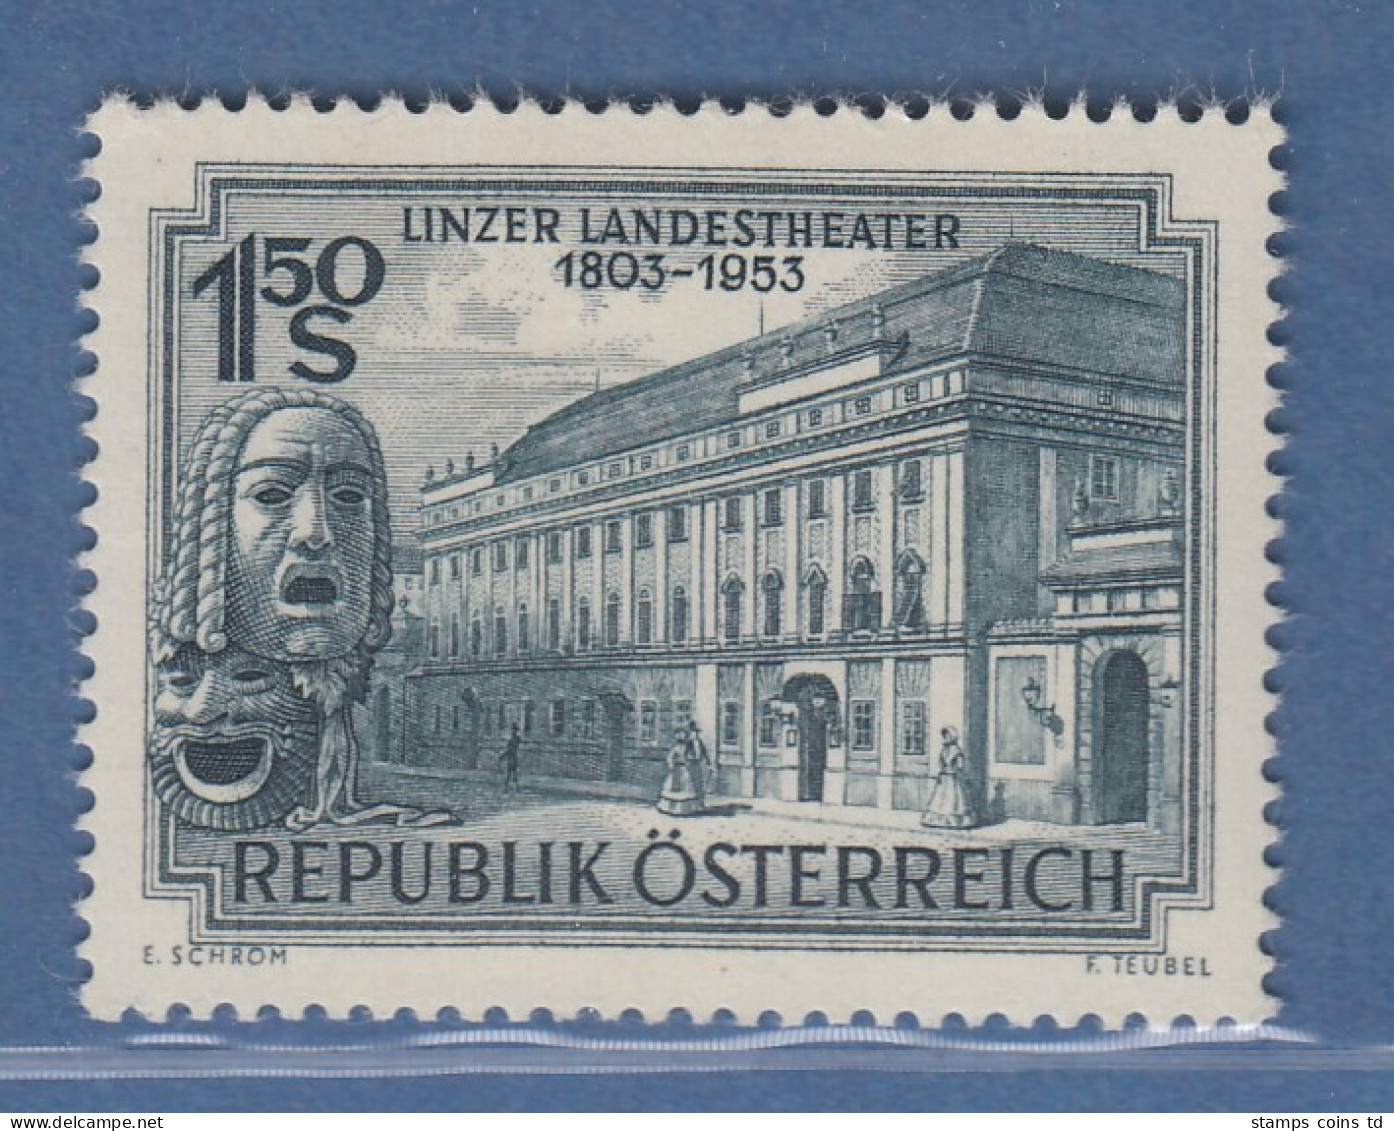 Österreich 1953 Sondermarke 150 Jahre Linzer Landestheater Mi.-Nr. 988 - Ongebruikt